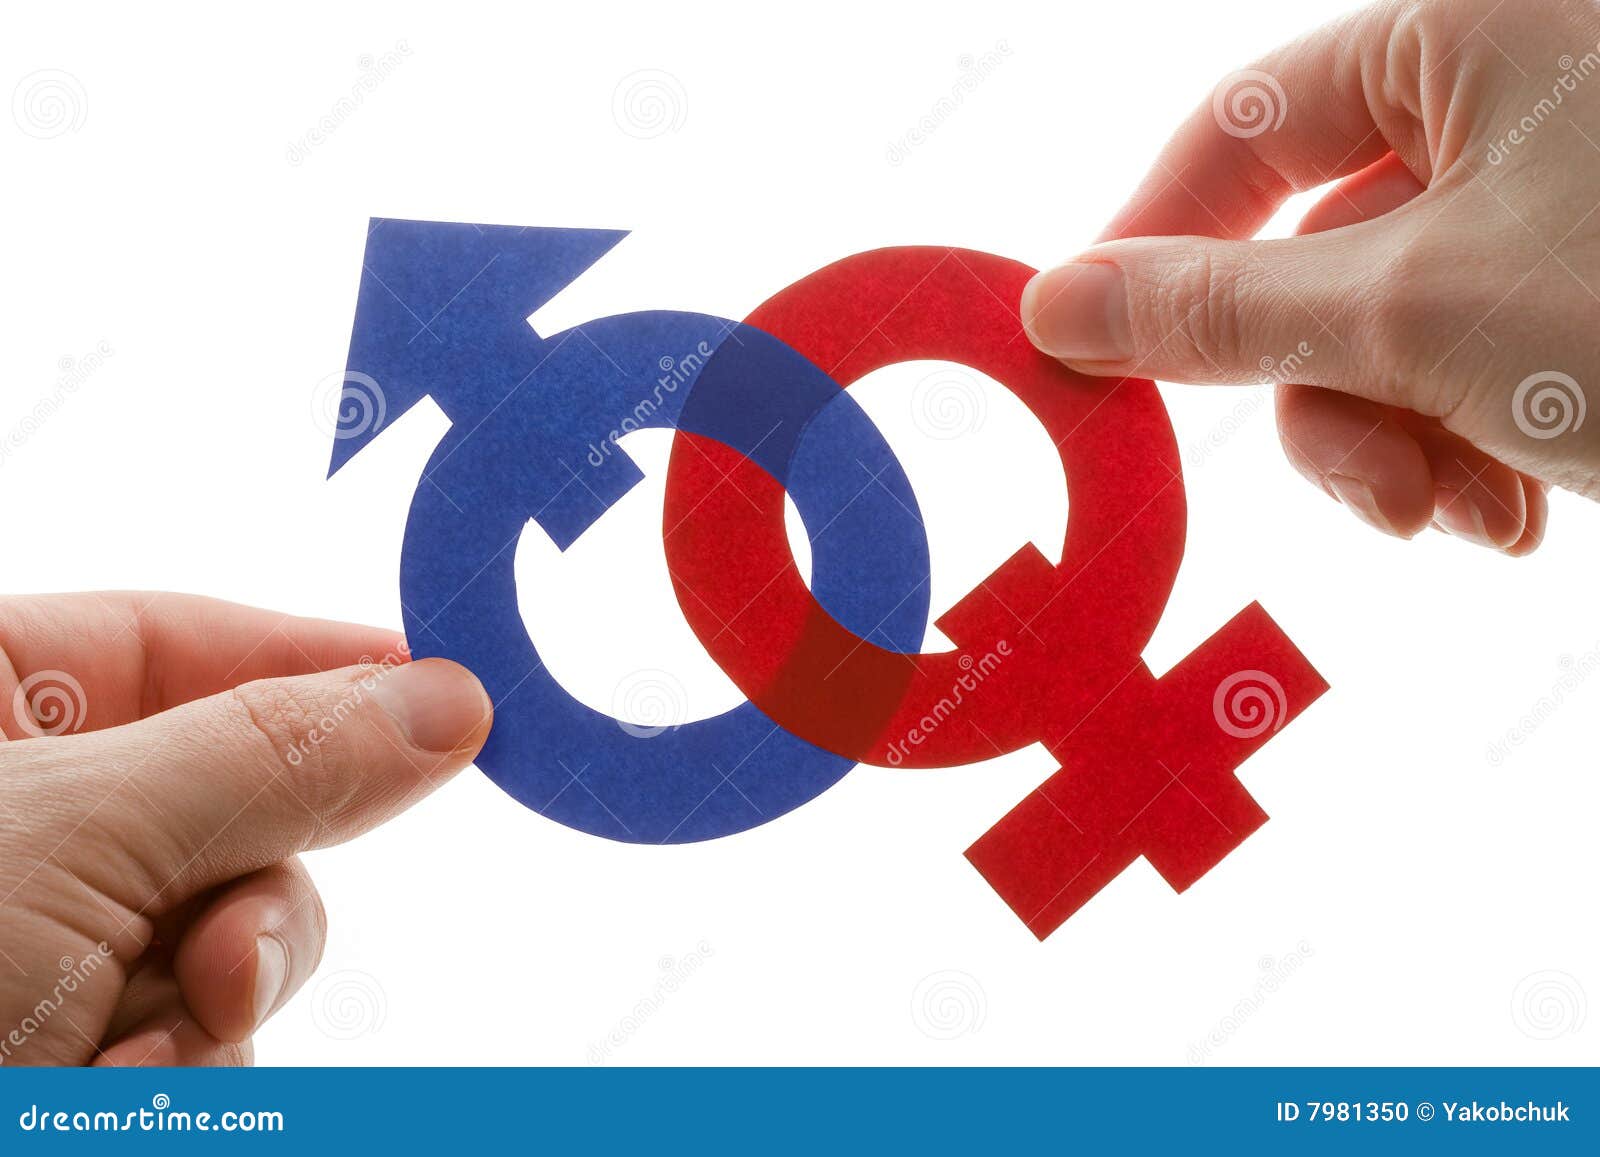 gender s